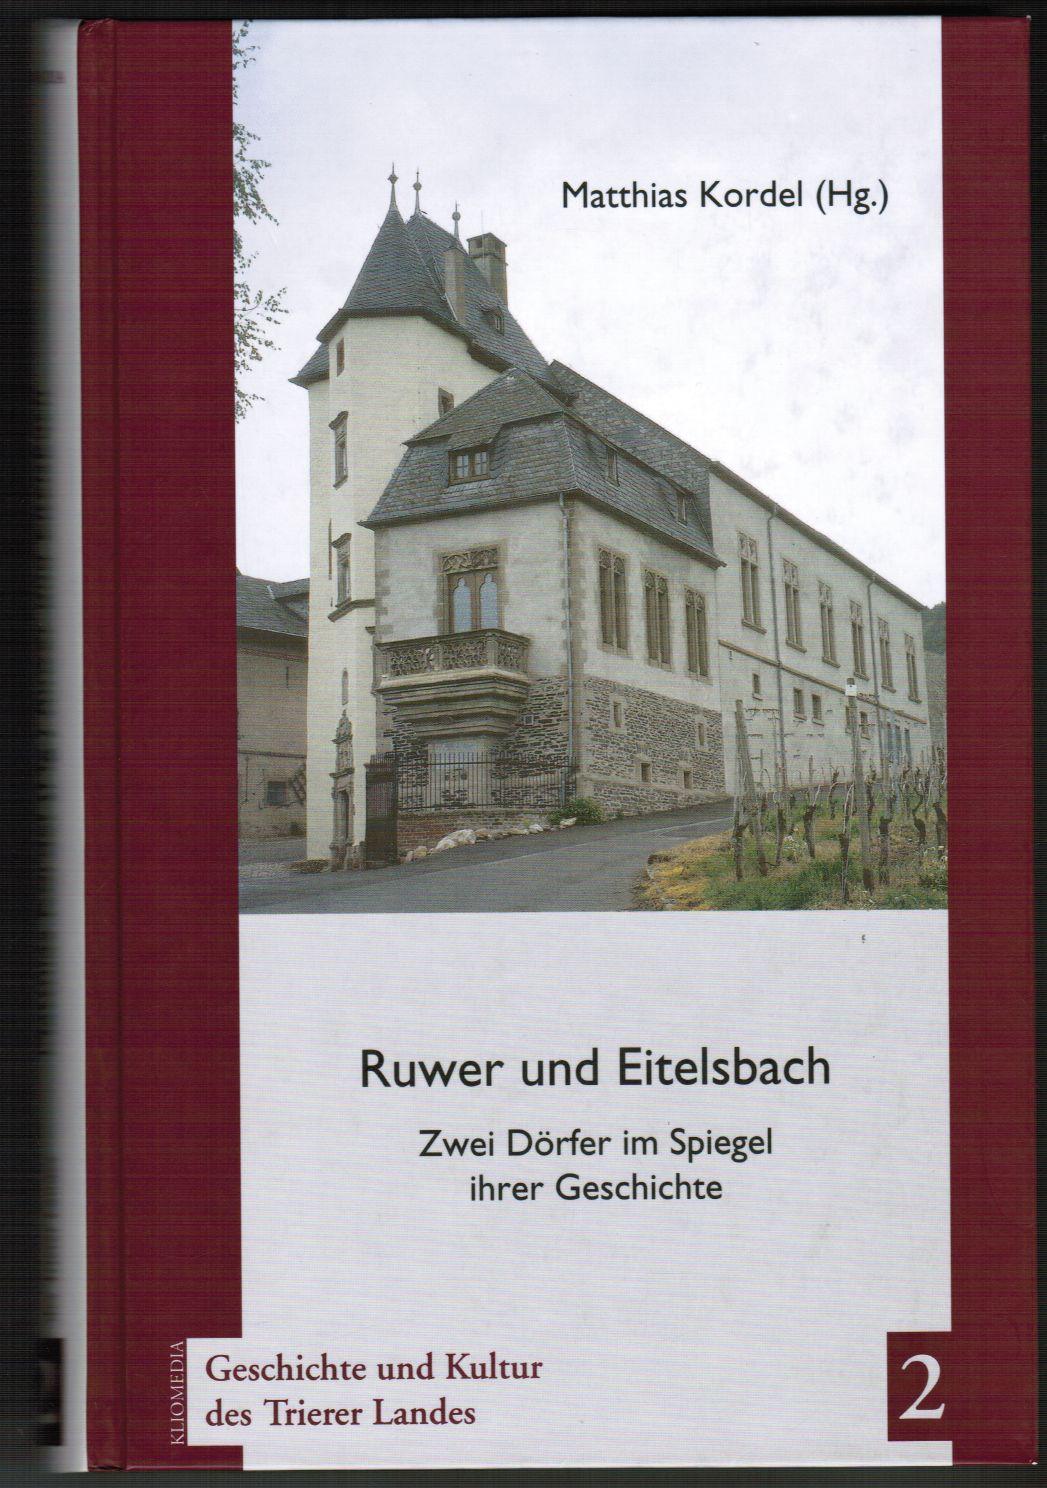 Ruwer und Eitelsbach. Zwei Dörfer im Spiegel ihrer Geschichte. (Geschichte und Kultur des Trierer Landes : Band 2). - Kordel, Matthias (Hrsg.)